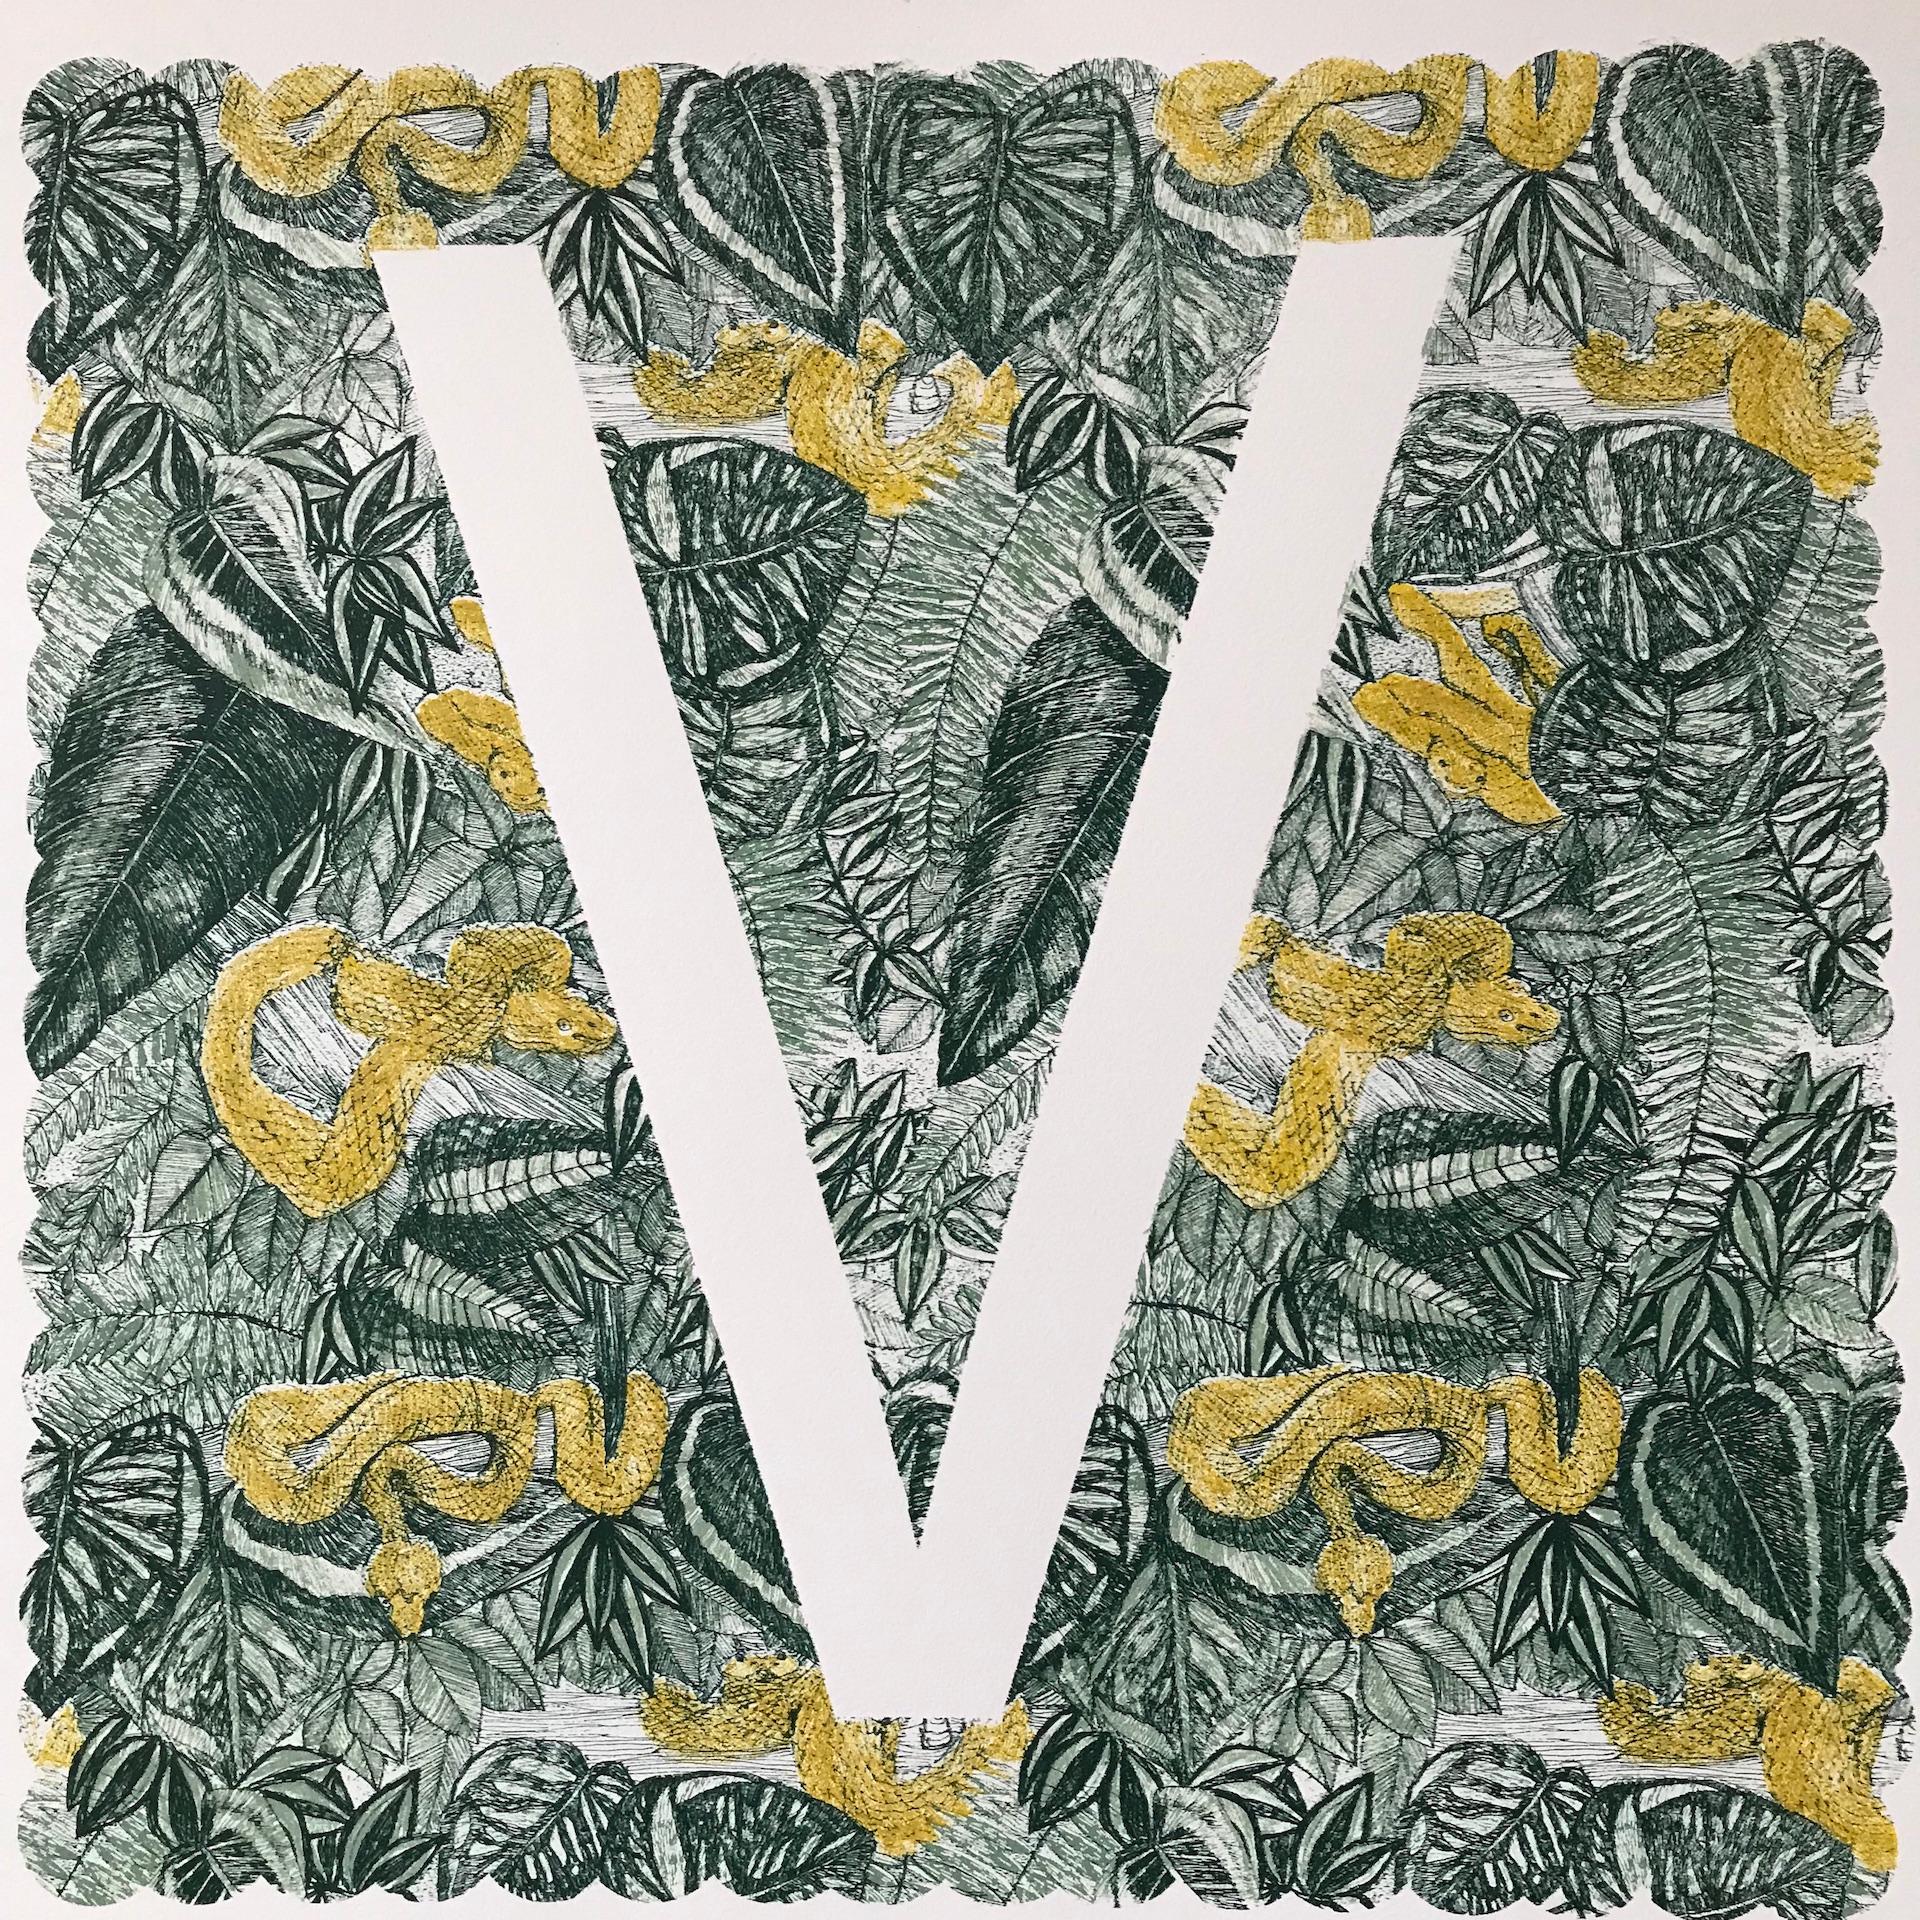 Clare Halifax, V is for Viper, Édition limitée Animal Art, Imprimé monogramme brillant